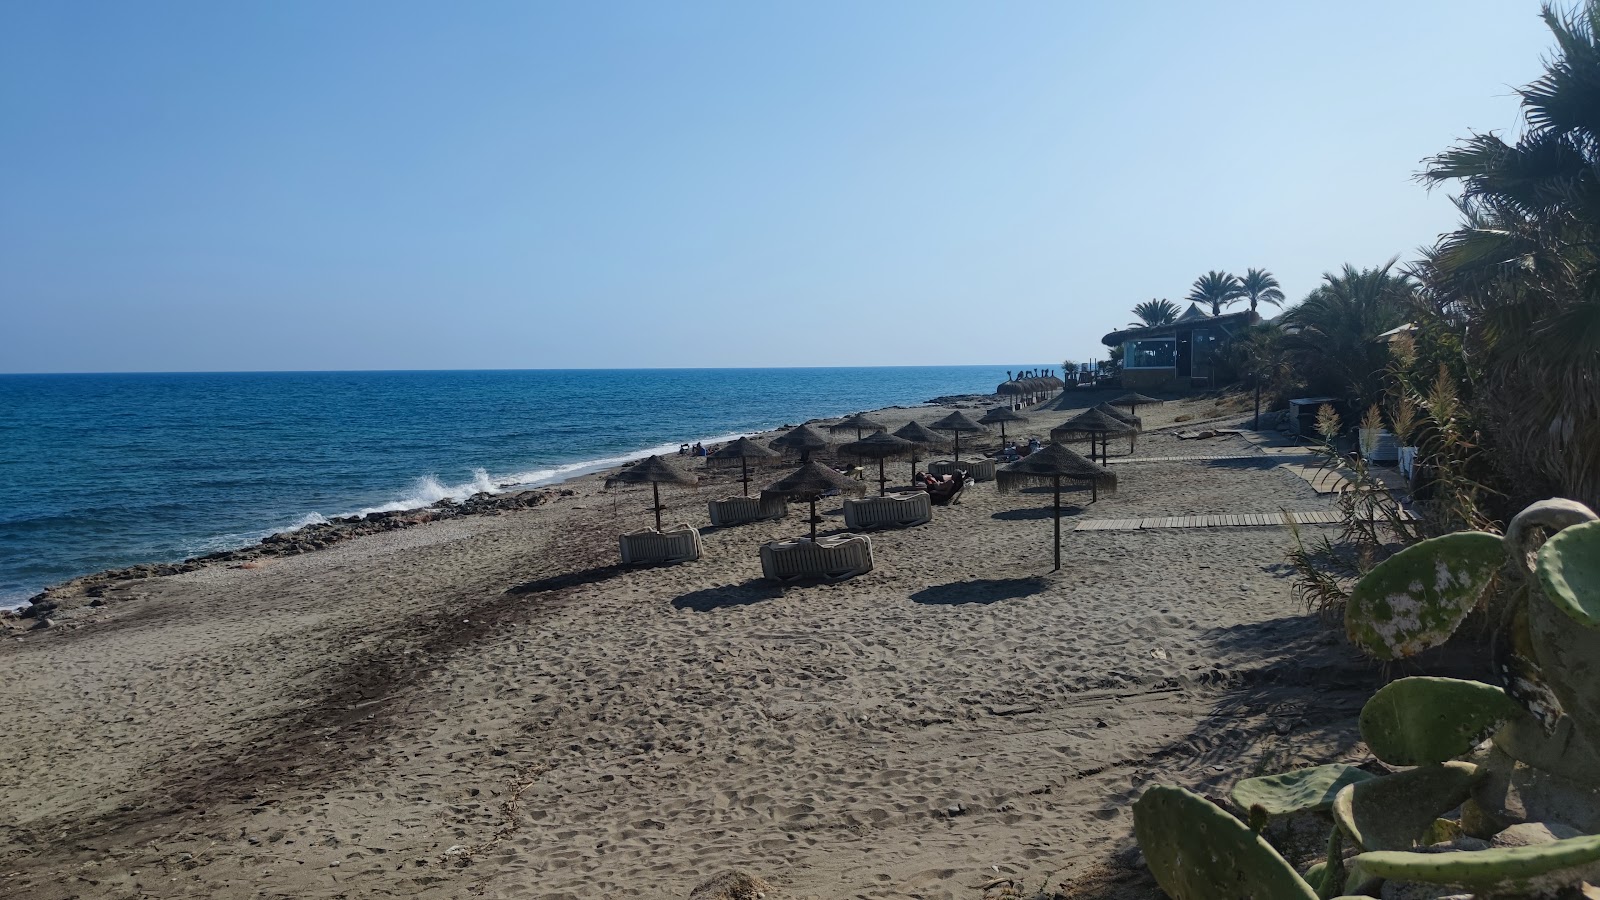 Playa de Mojacar'in fotoğrafı - rahatlamayı sevenler arasında popüler bir yer